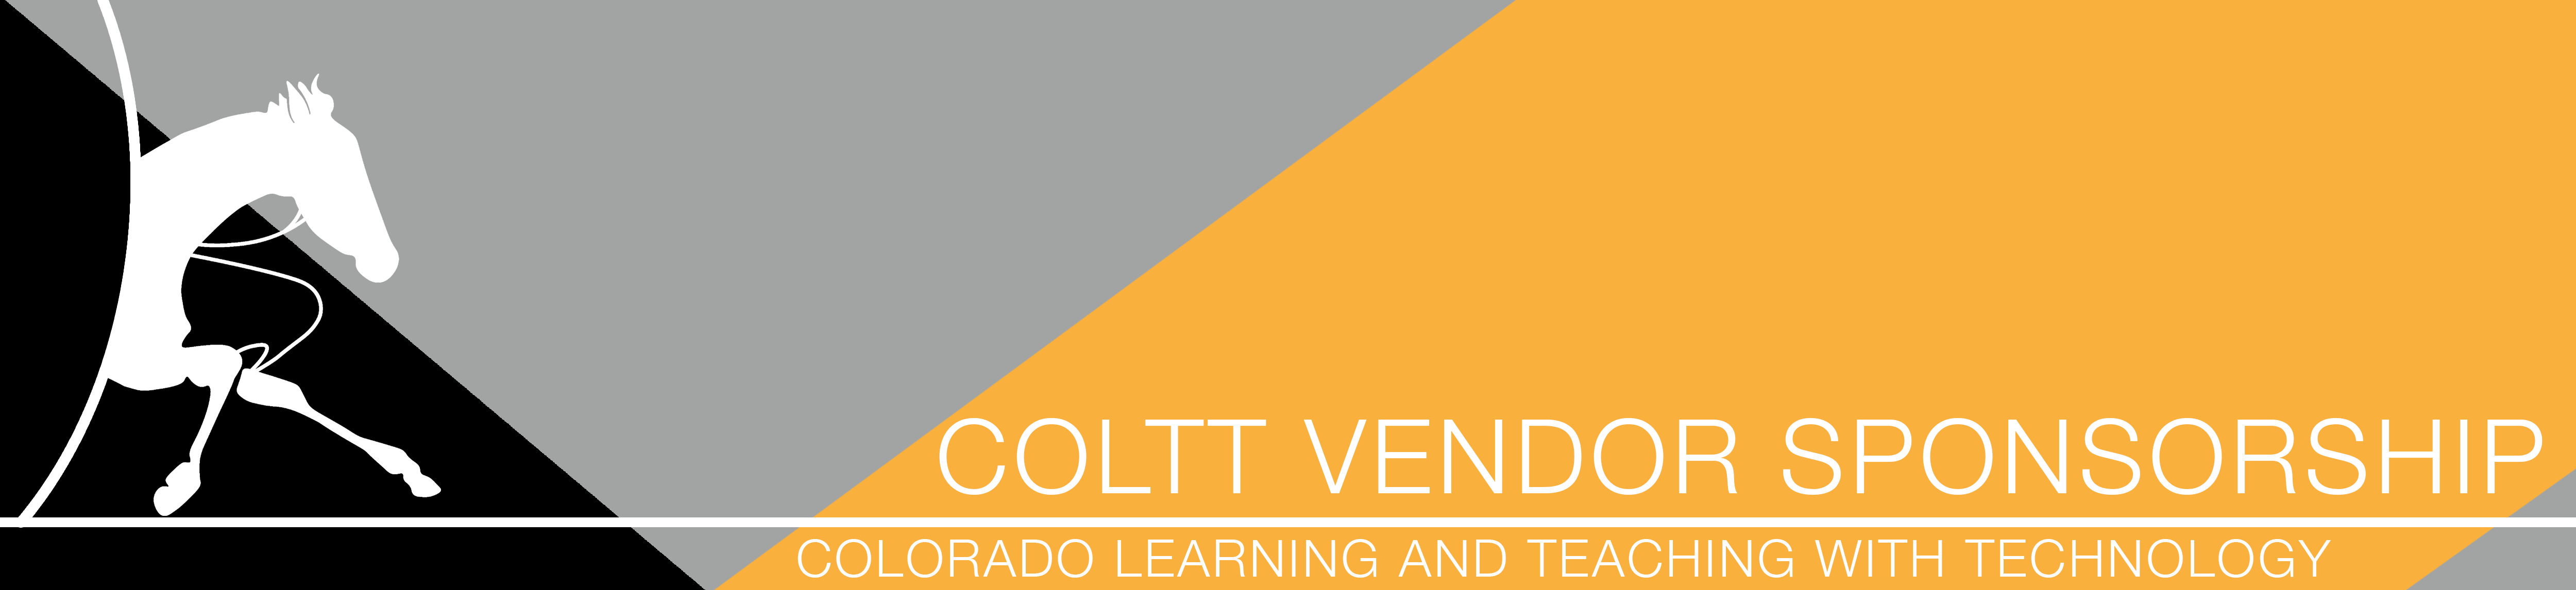 COLTT Vendor Logo